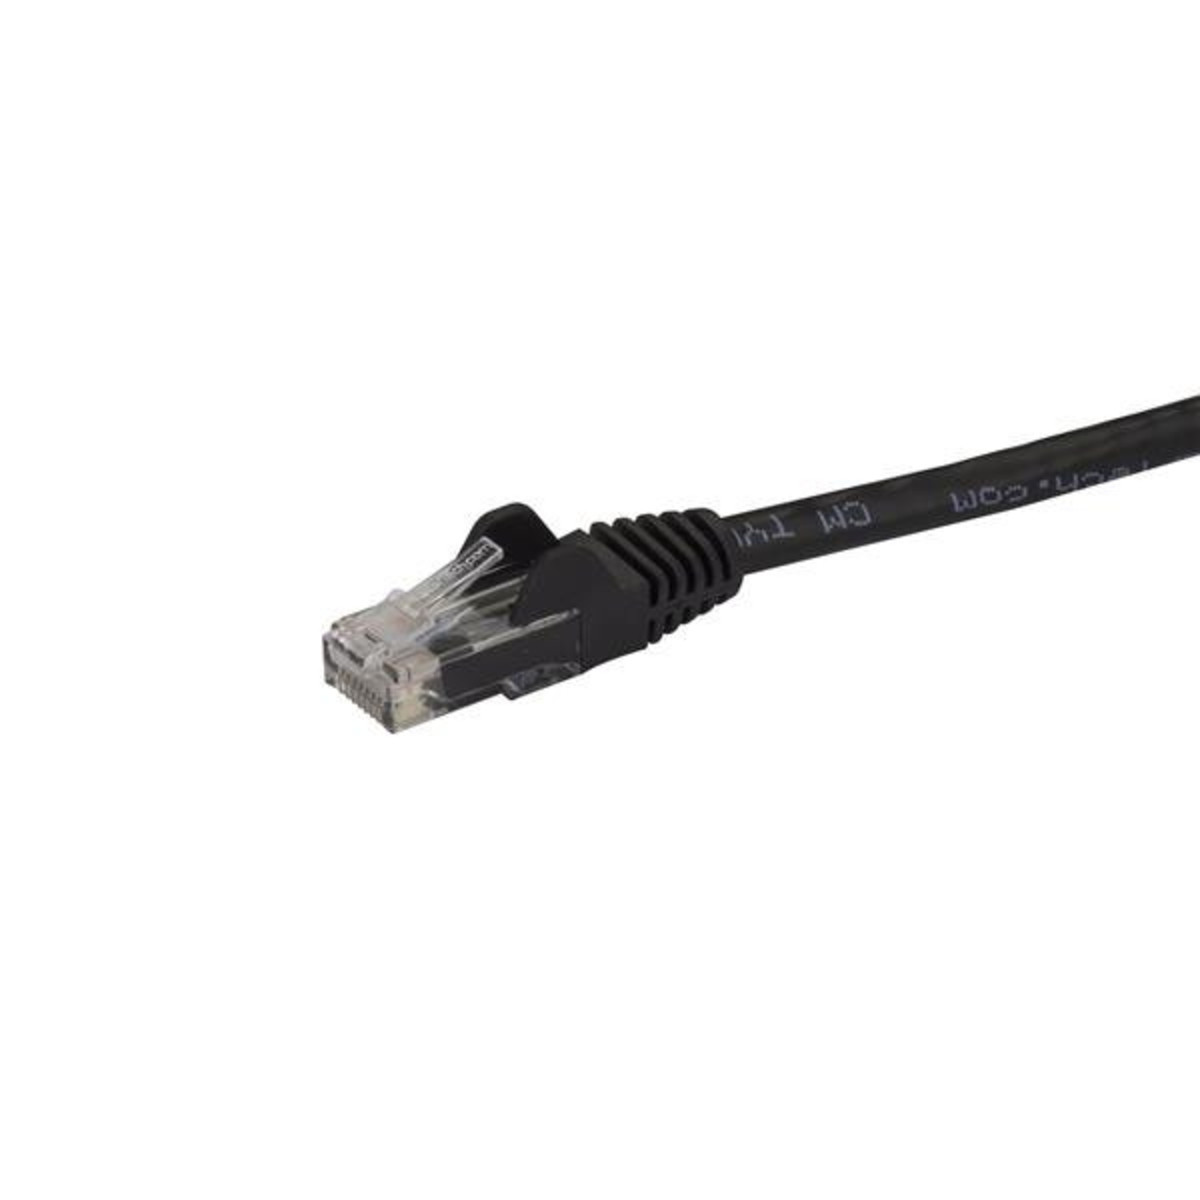 1m 1GB RJ45 UTP Cat6 Patch Cable